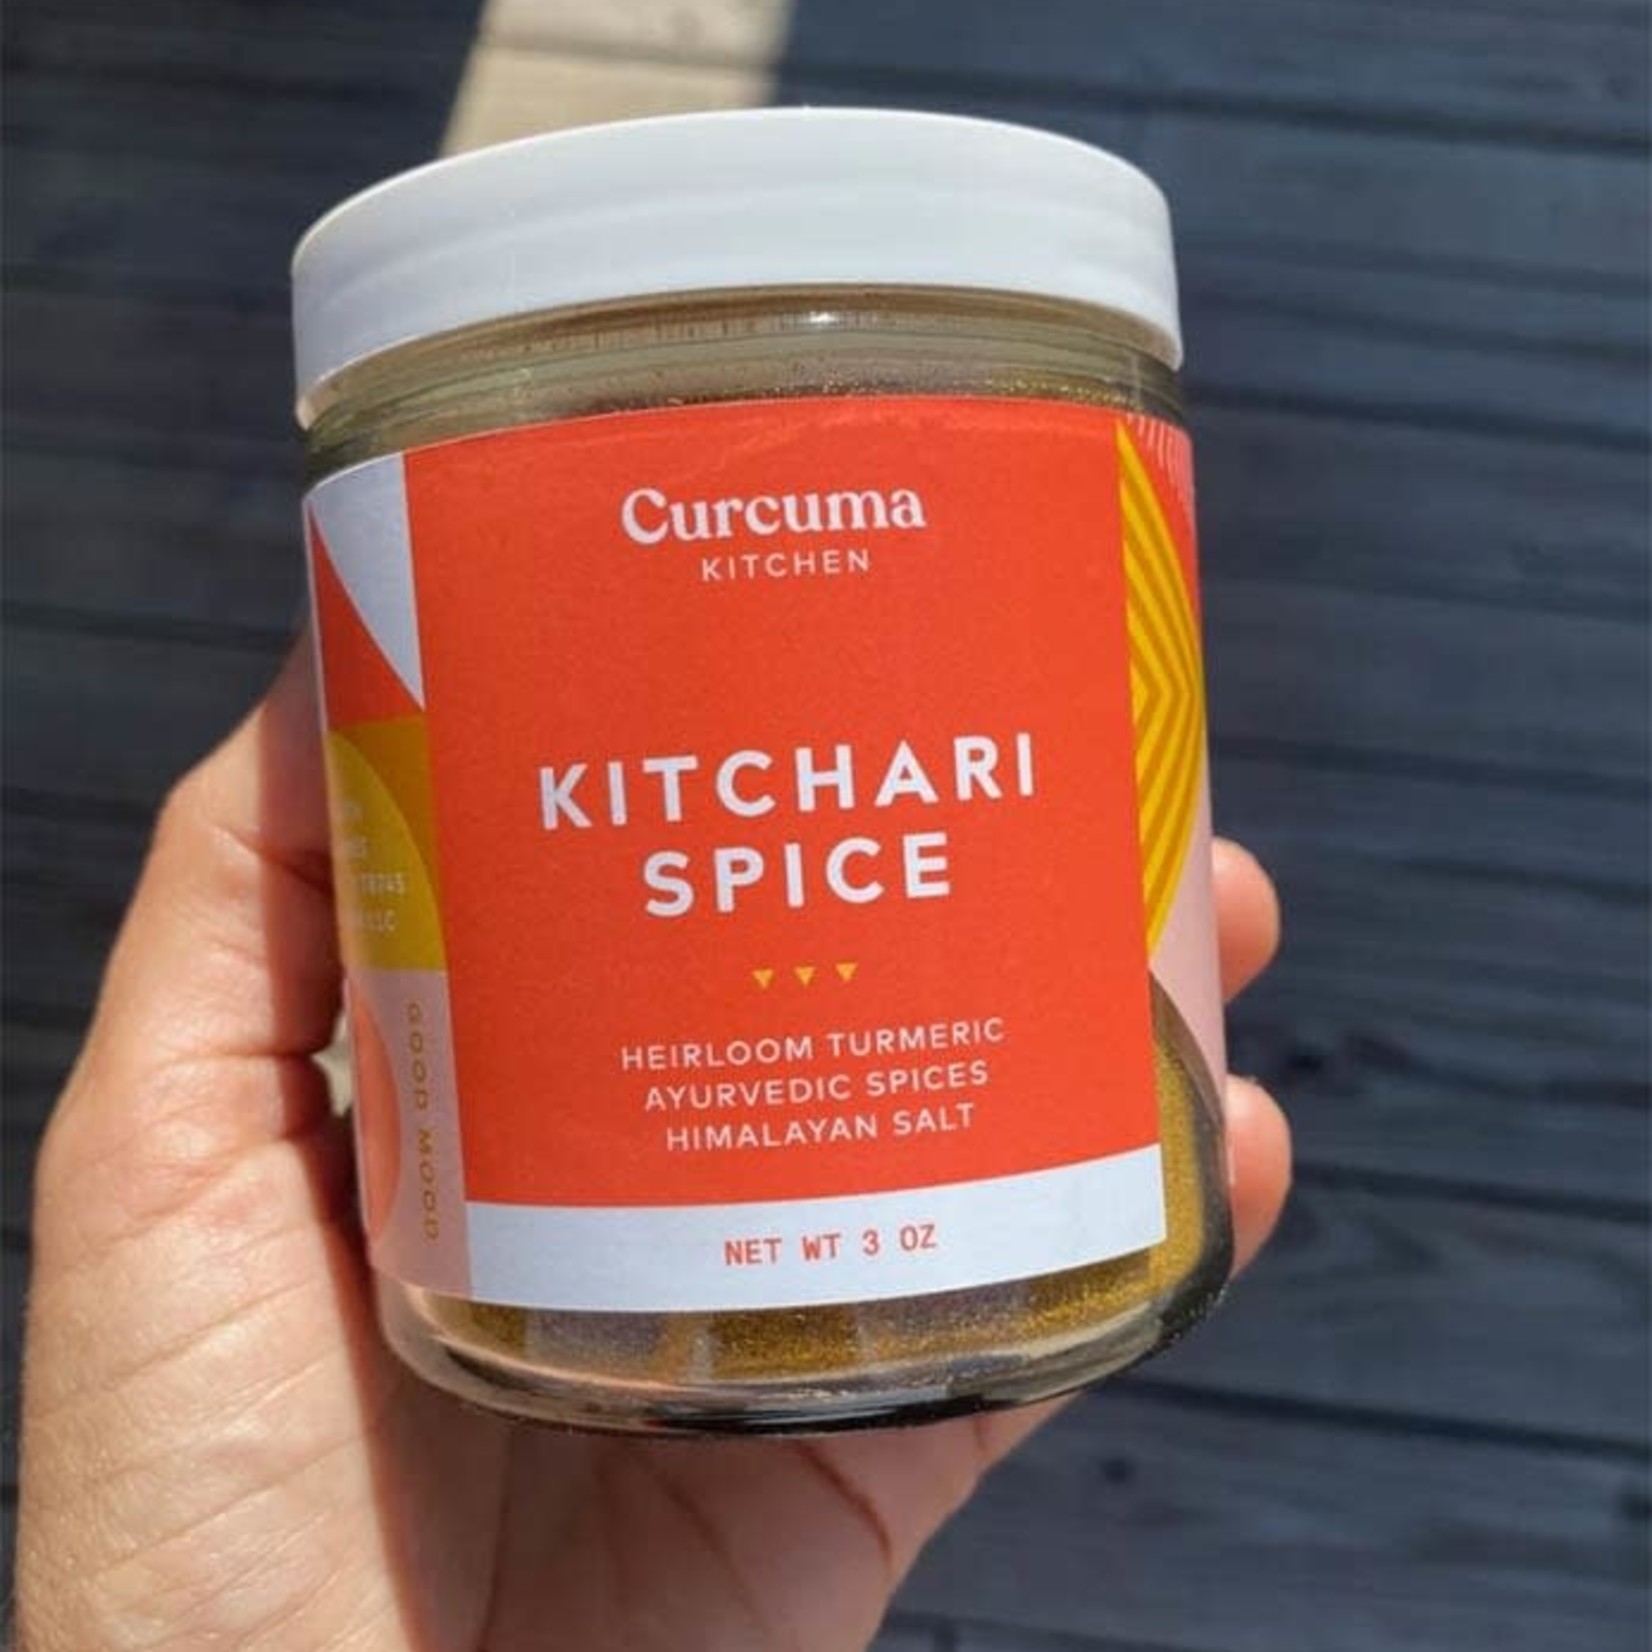 Curcuma Kitchen Kitchari Spice by Curcuma Kitchen